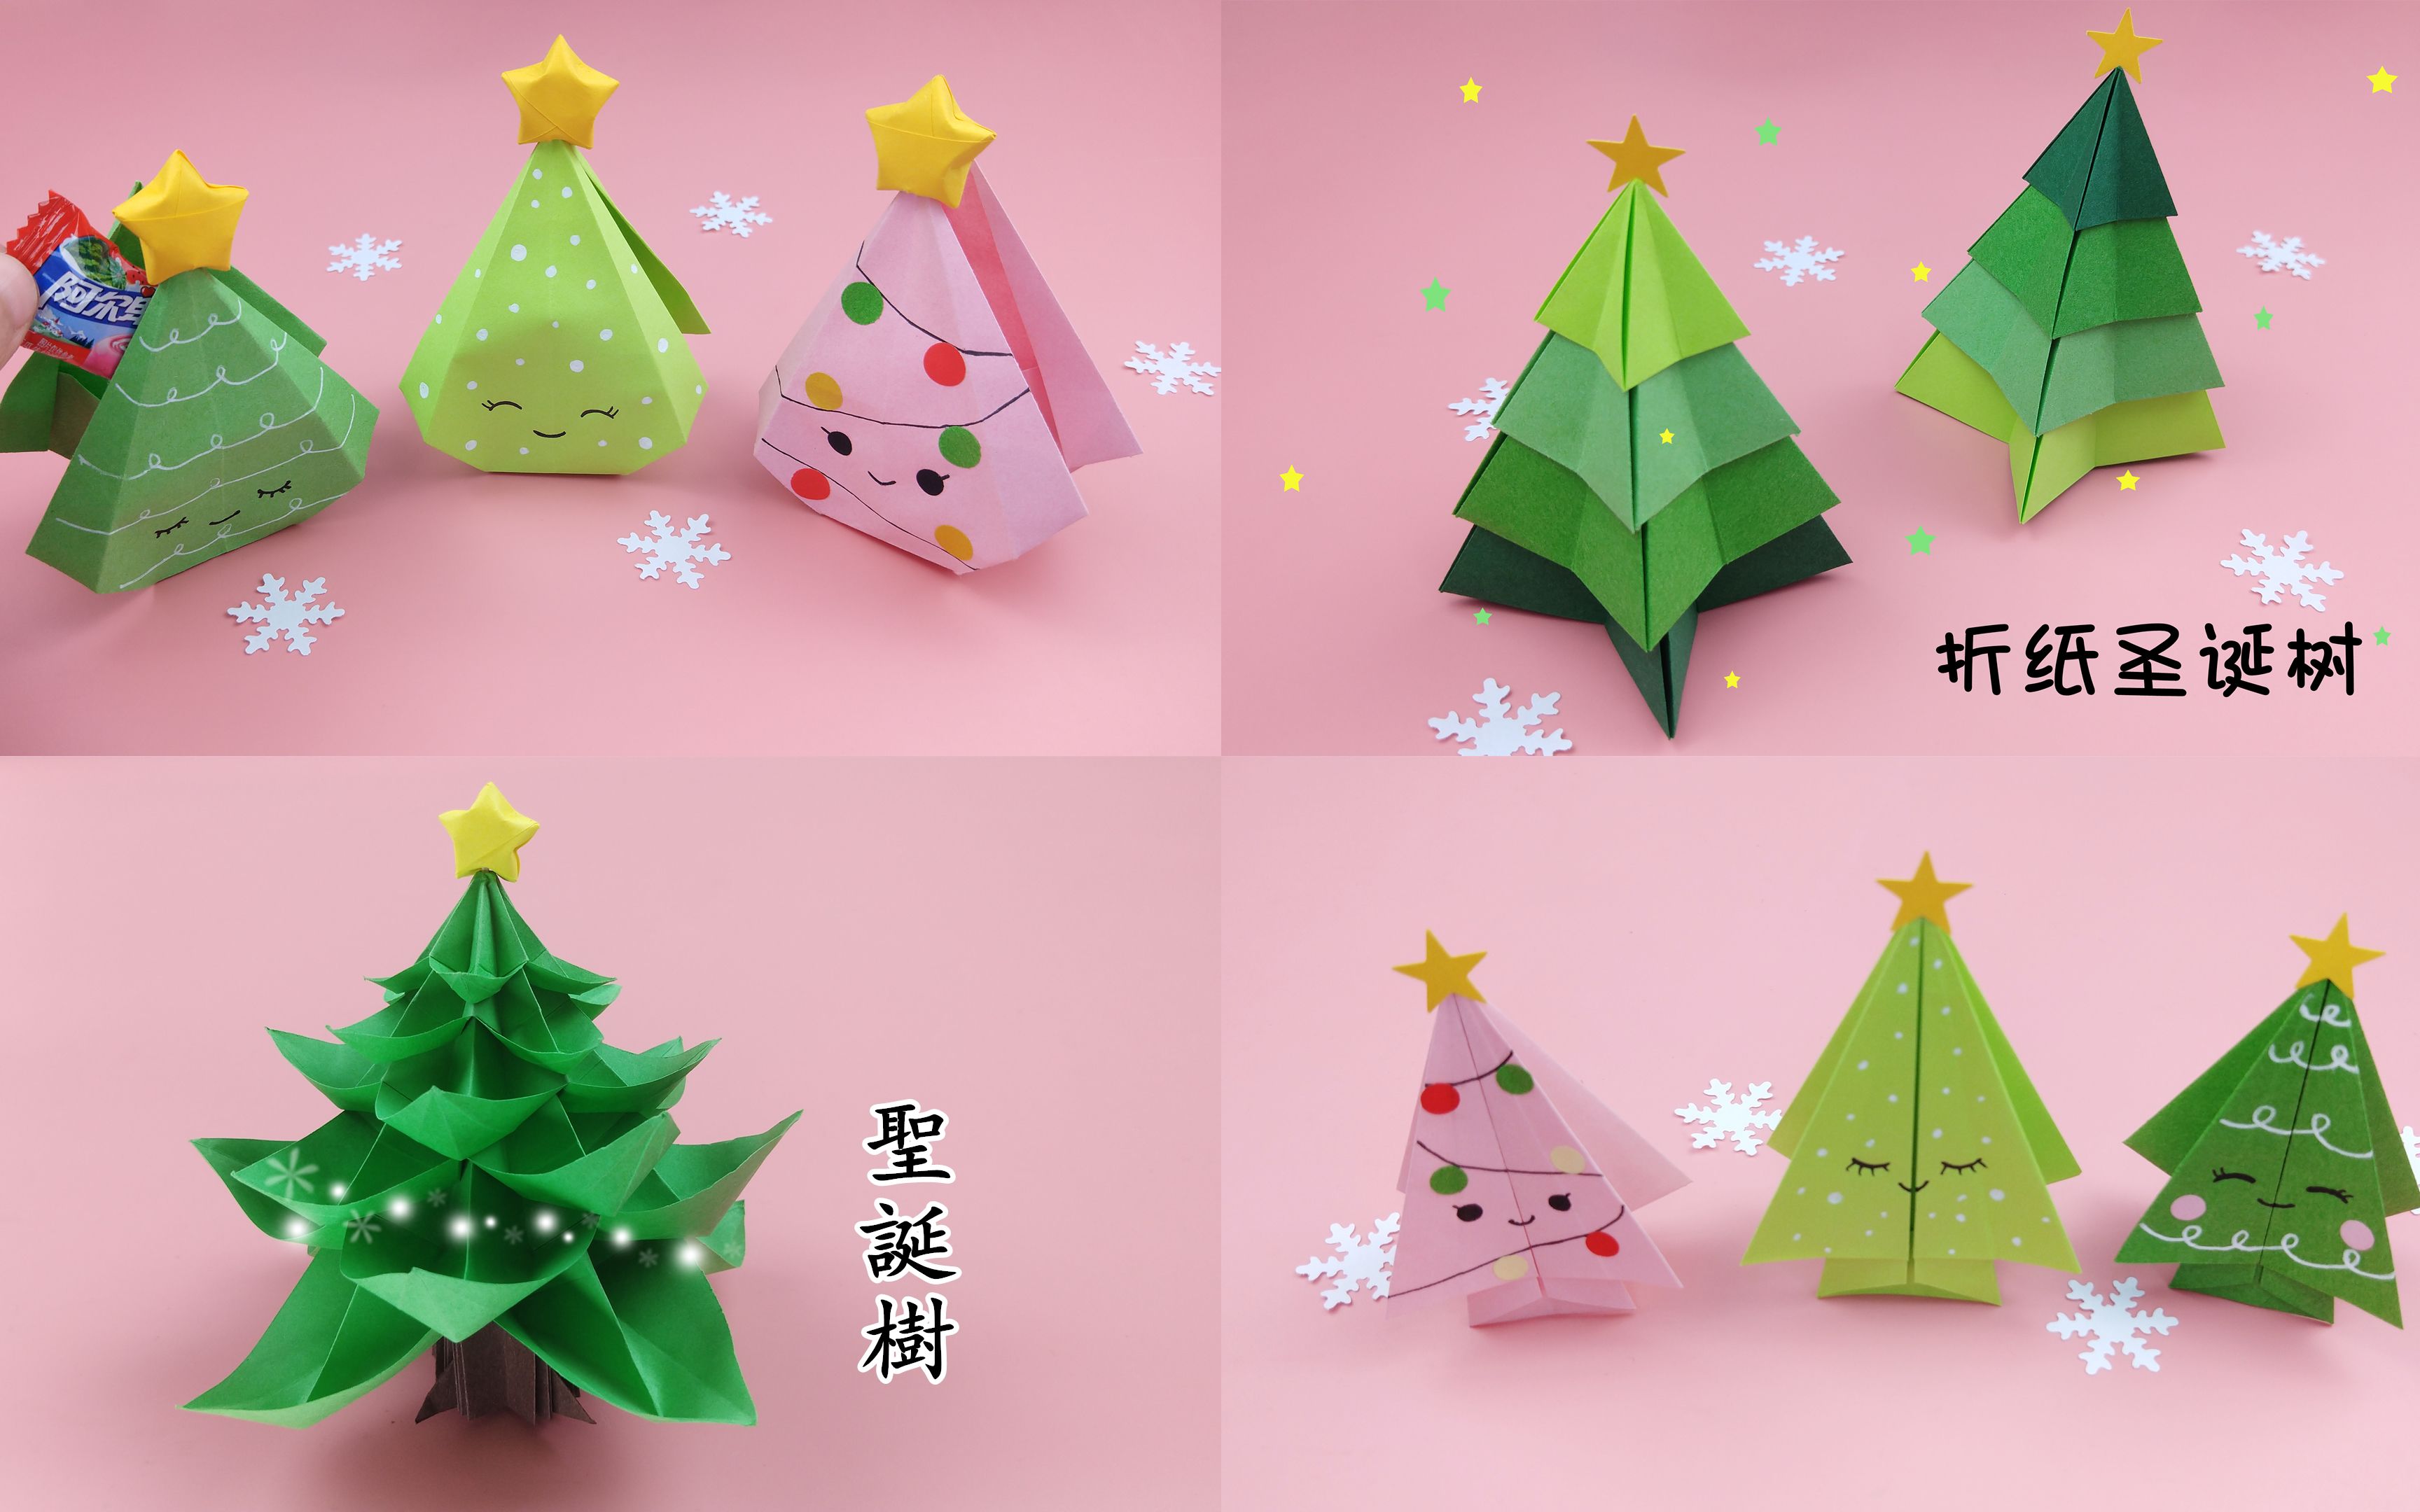 折纸漂亮又可爱的四棵圣诞树,简单有创意,圣诞节手工diy